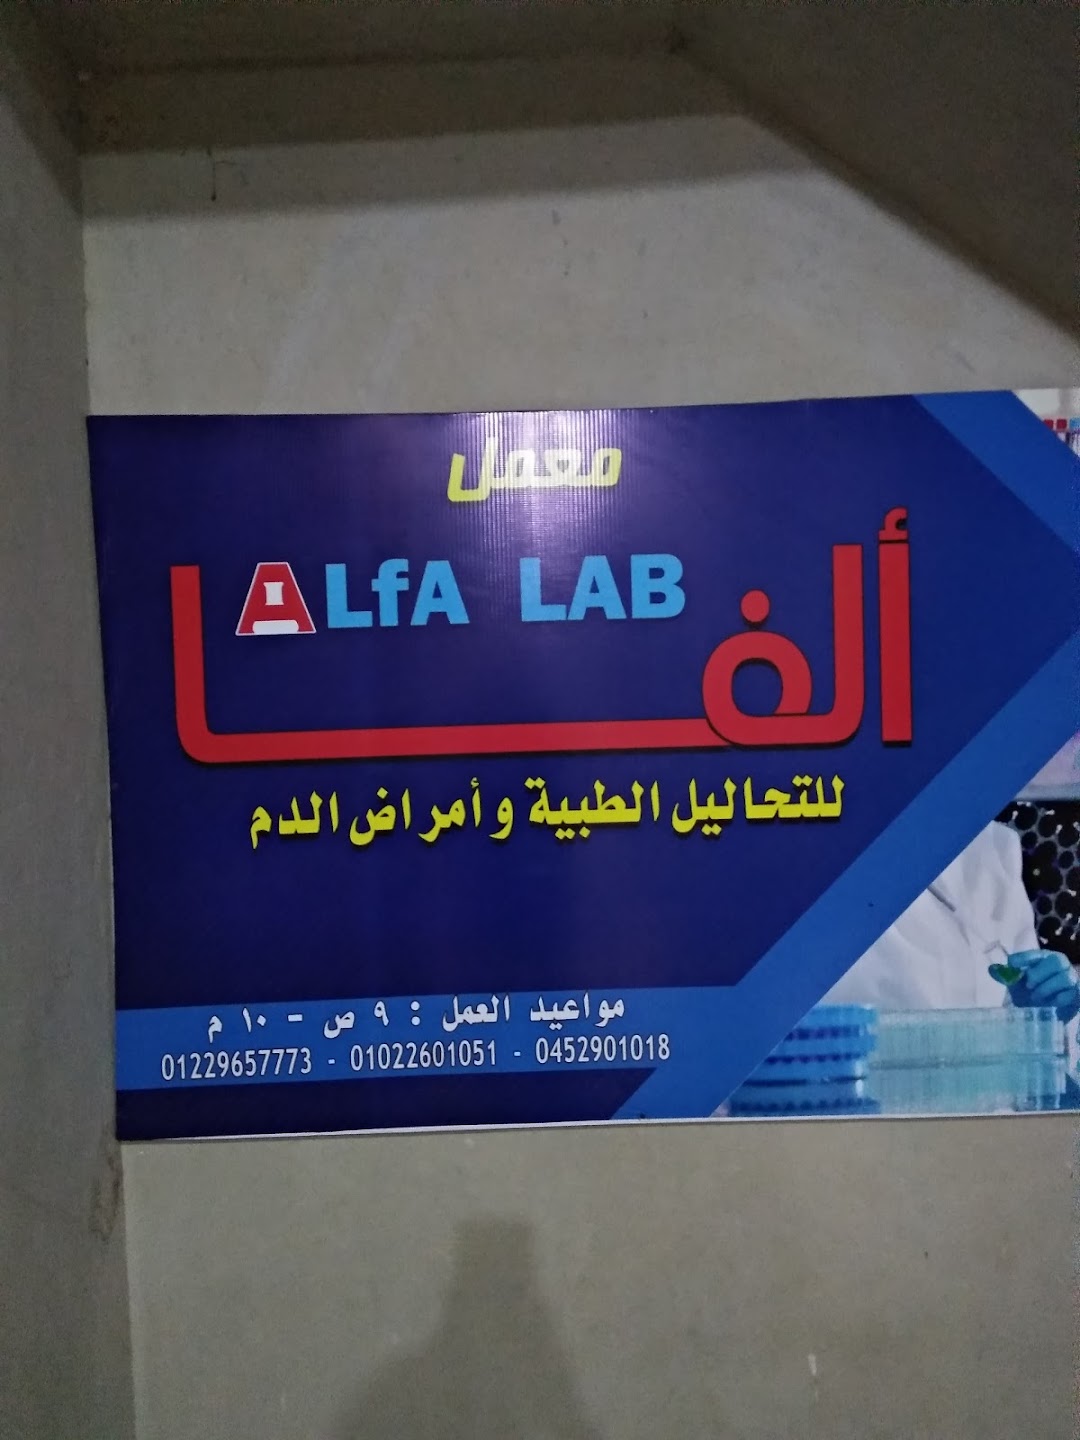 Alfa lab